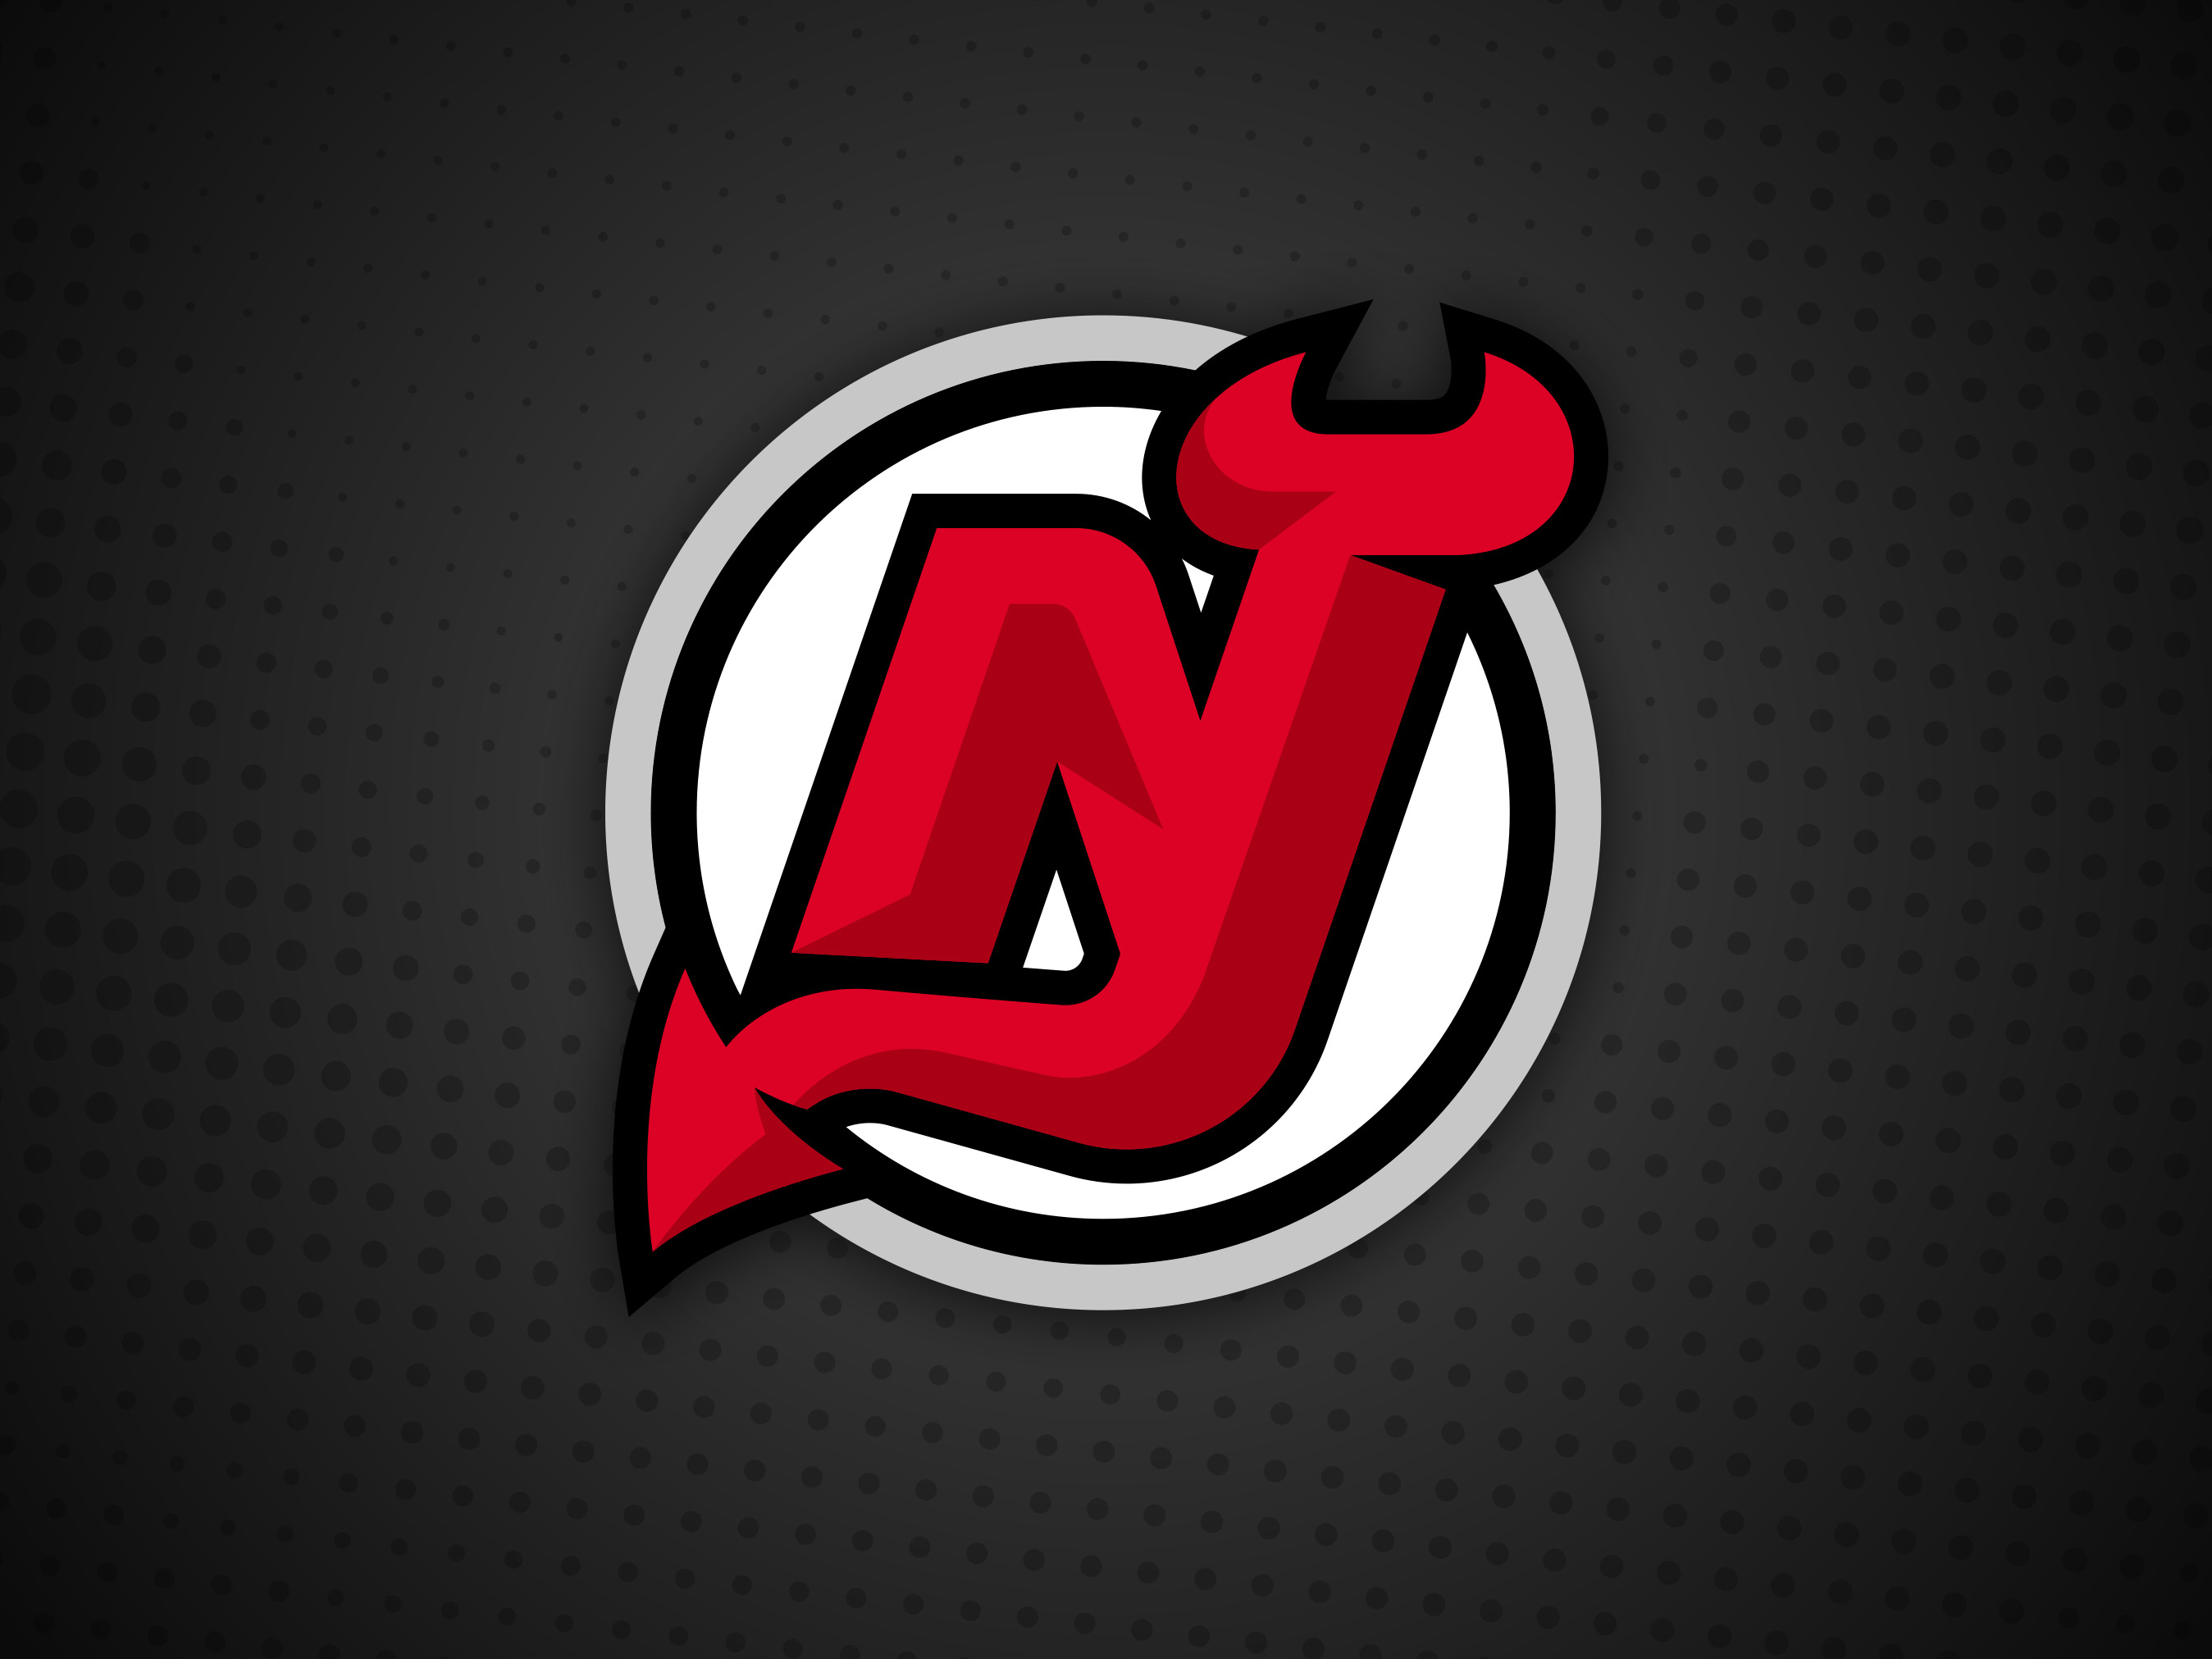 Binghamton Devils Reveal New Logo Design 